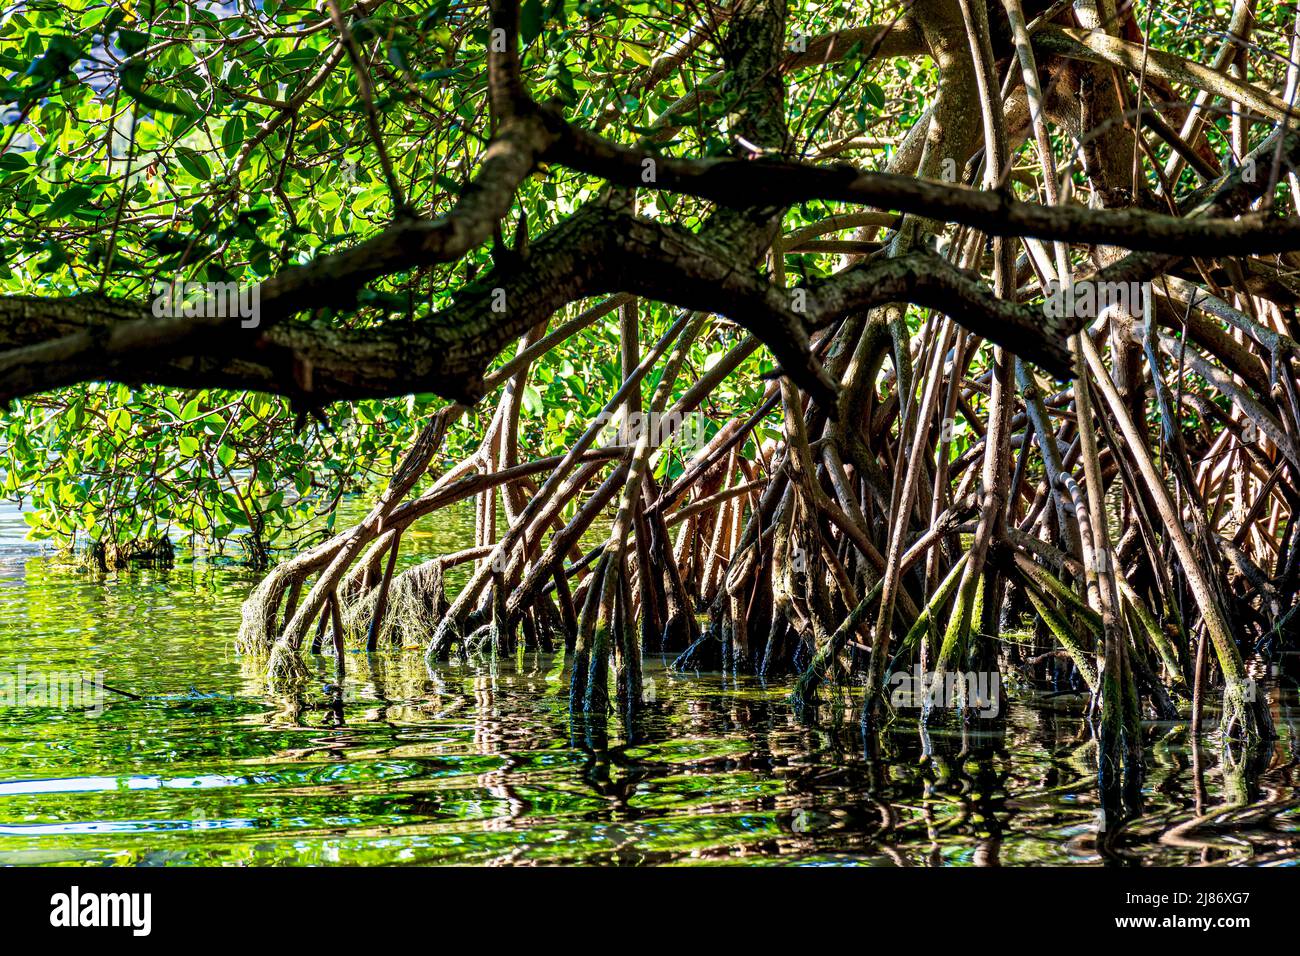 Végétation dense de mangrove avec ses arbres et ses racines illuminées par le soleil de la fin de l'après-midi à Rio de Janeiro, Brésil Banque D'Images